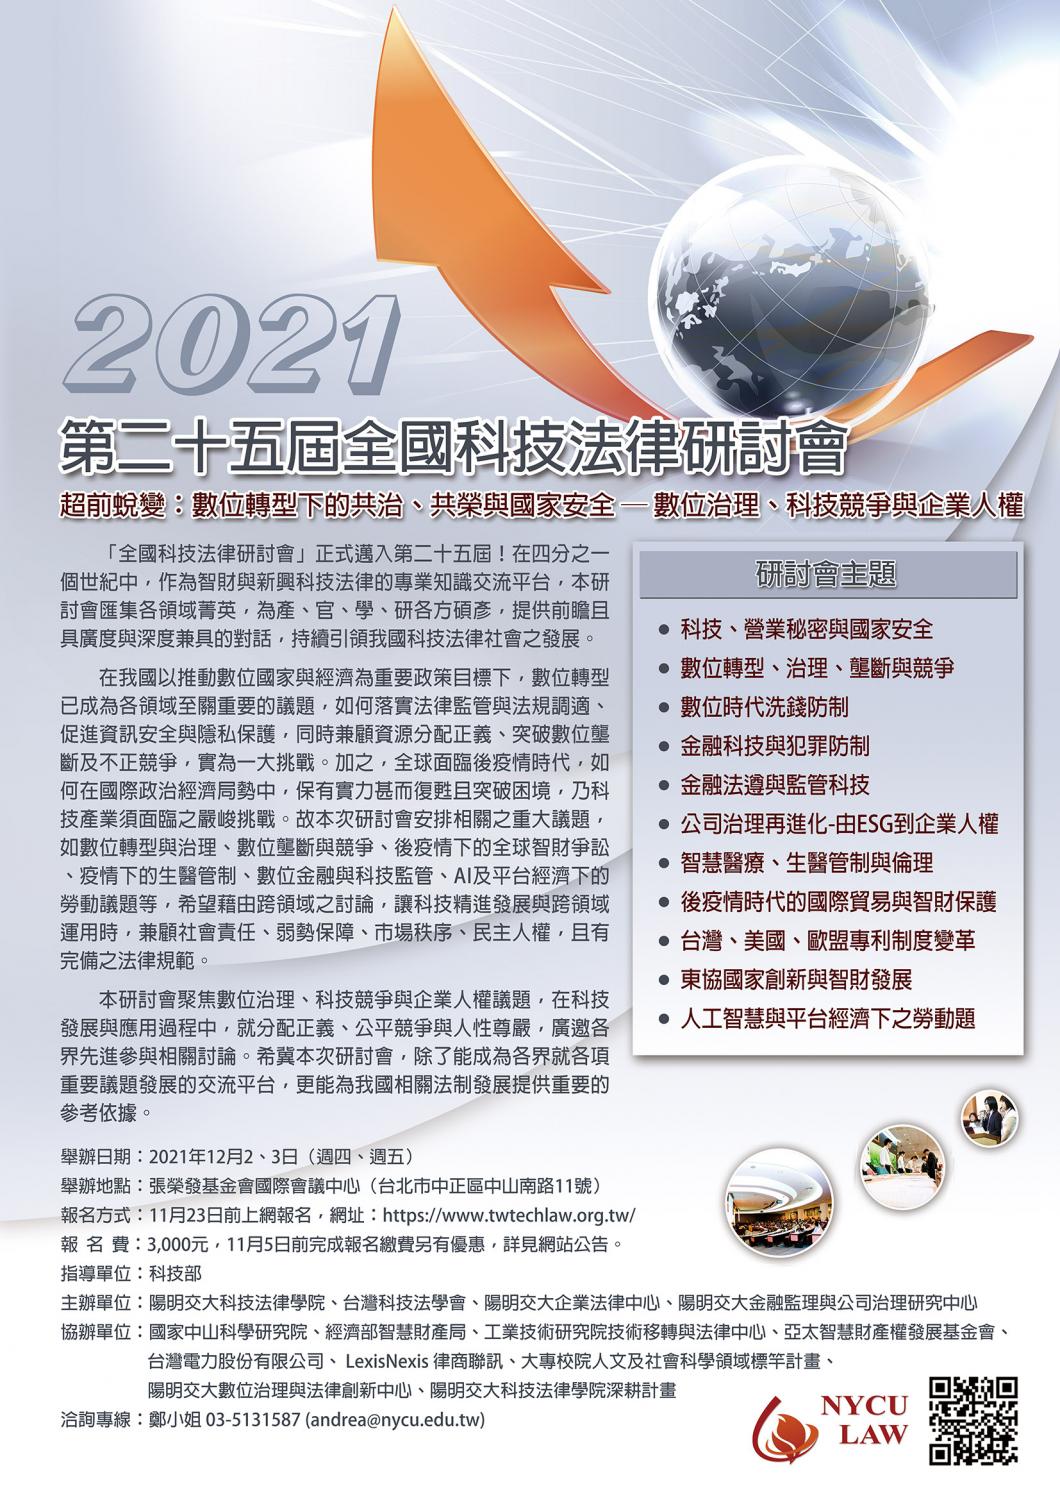 2021年第二十五屆全國科技法律研討會_海報.jpg